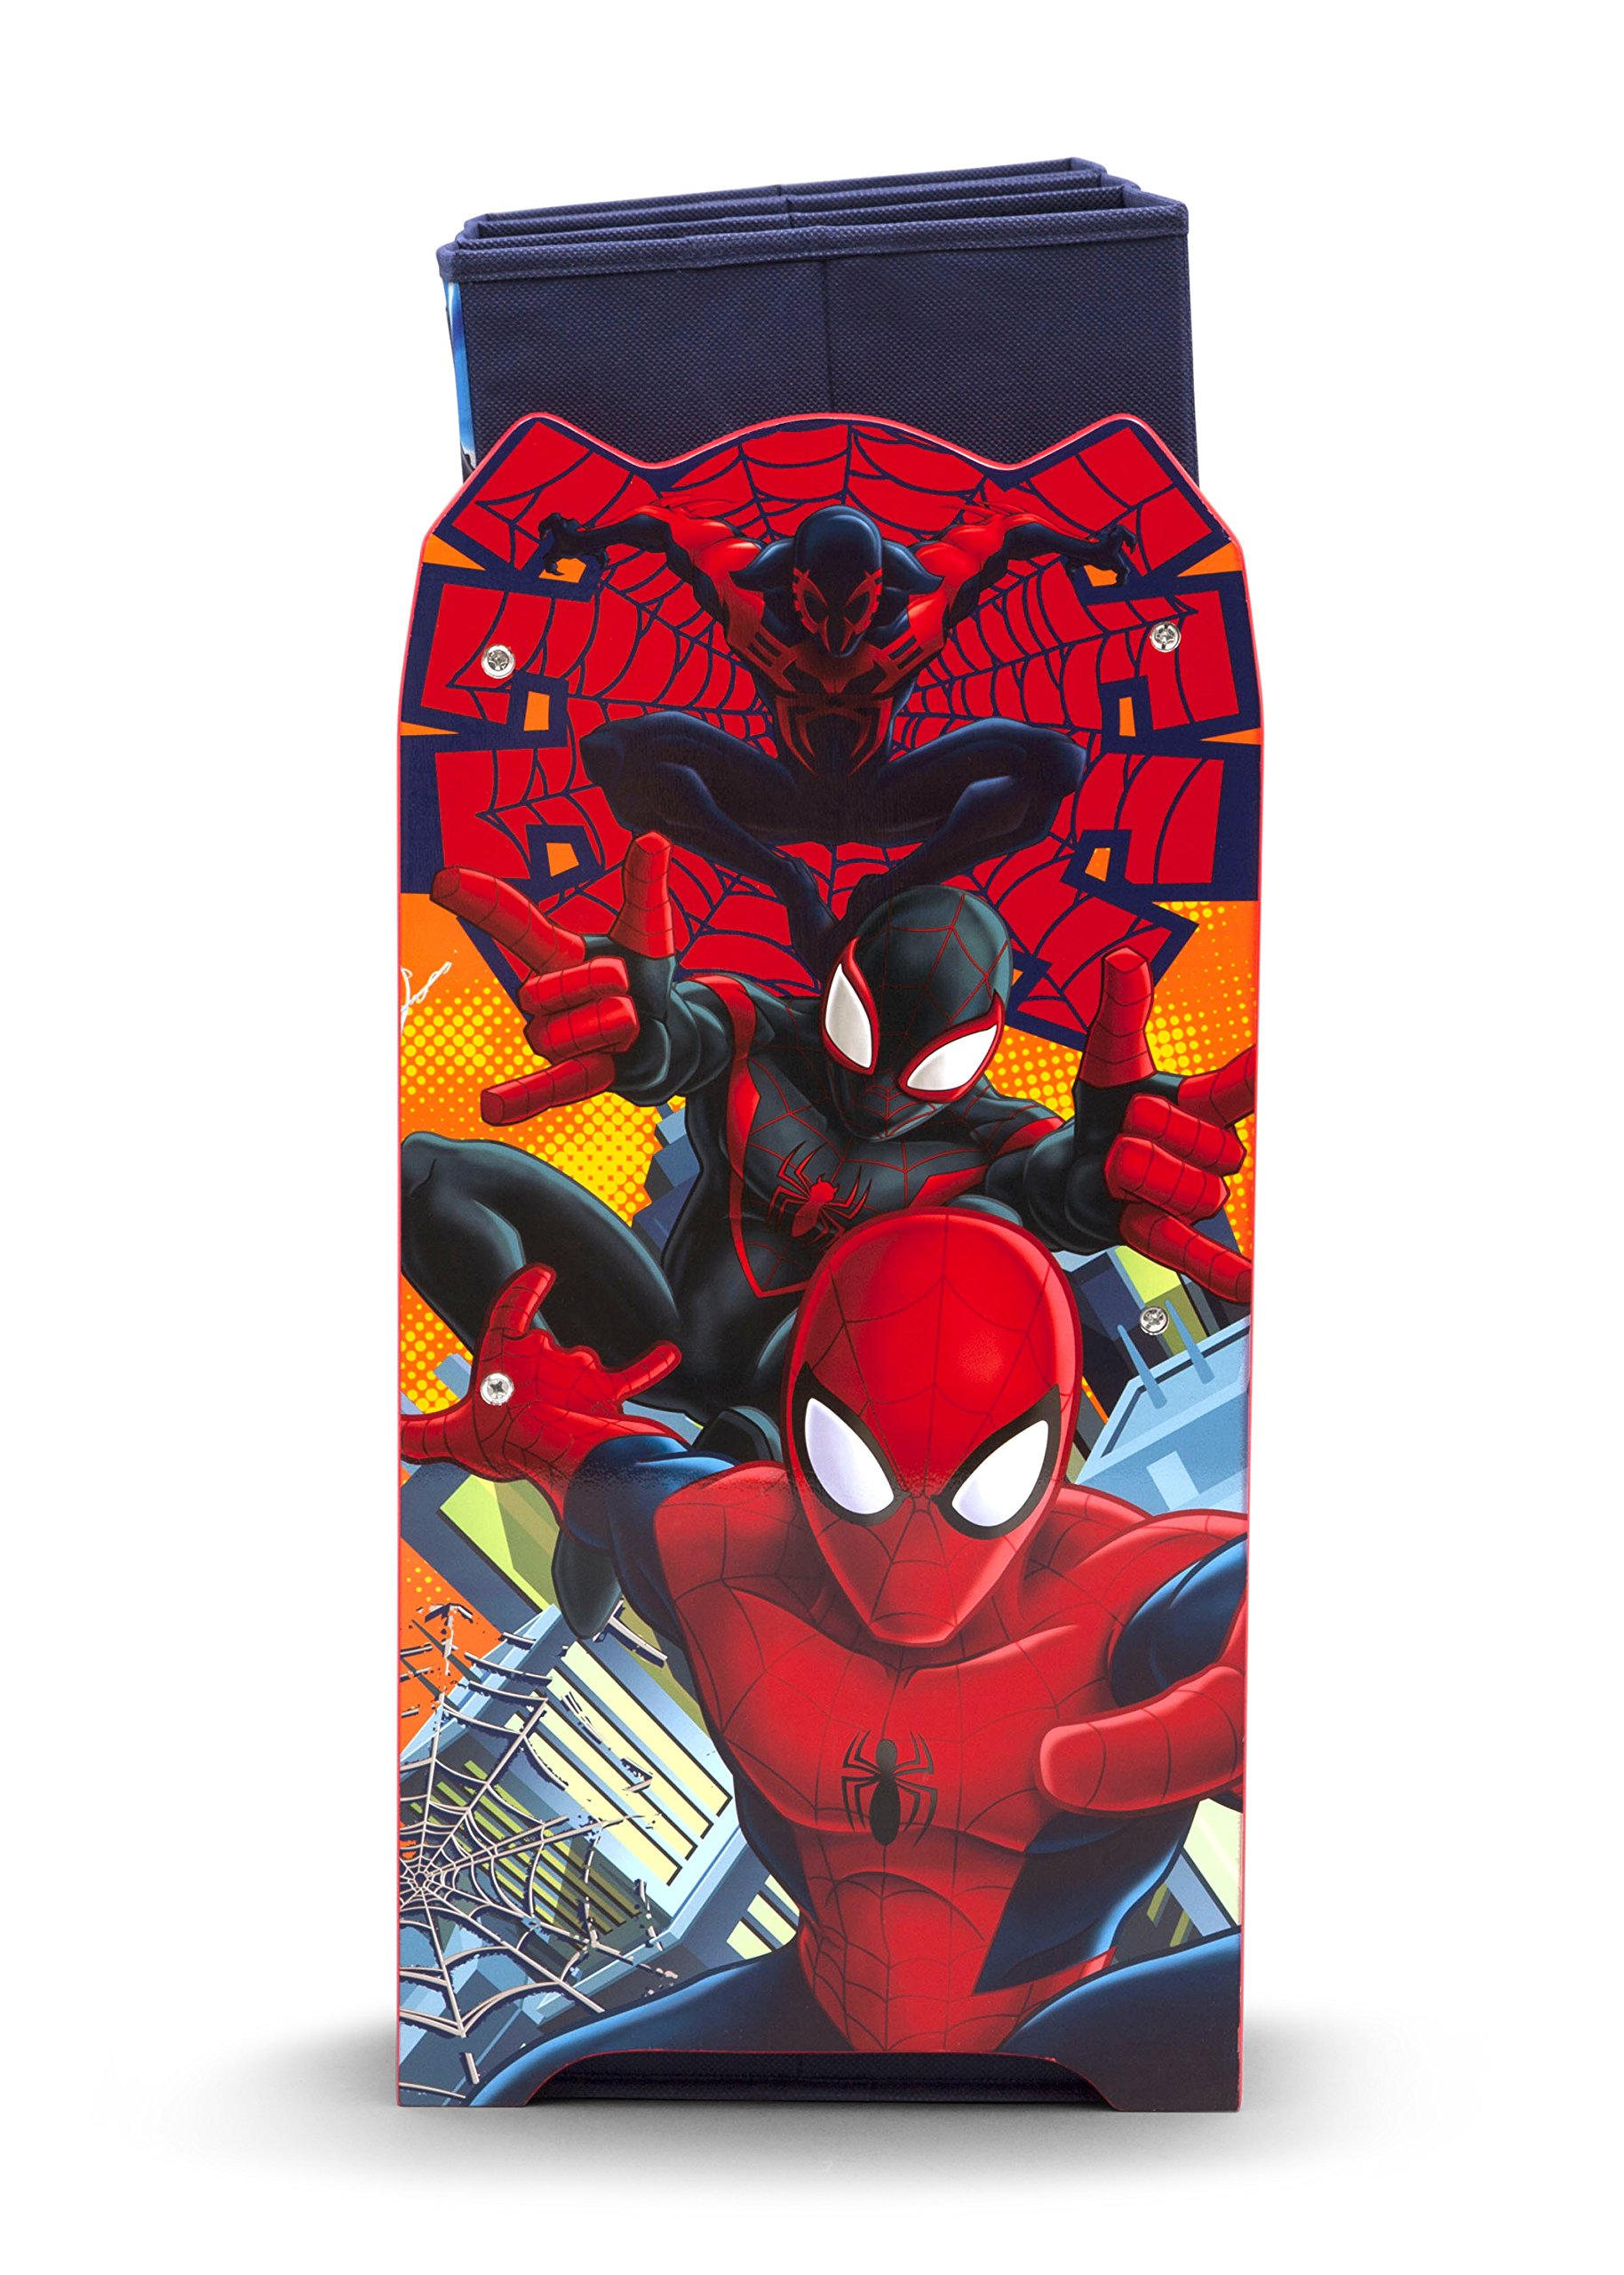 Delta Children Multi-Bin Toy Organizer, Marvel Spider-Man